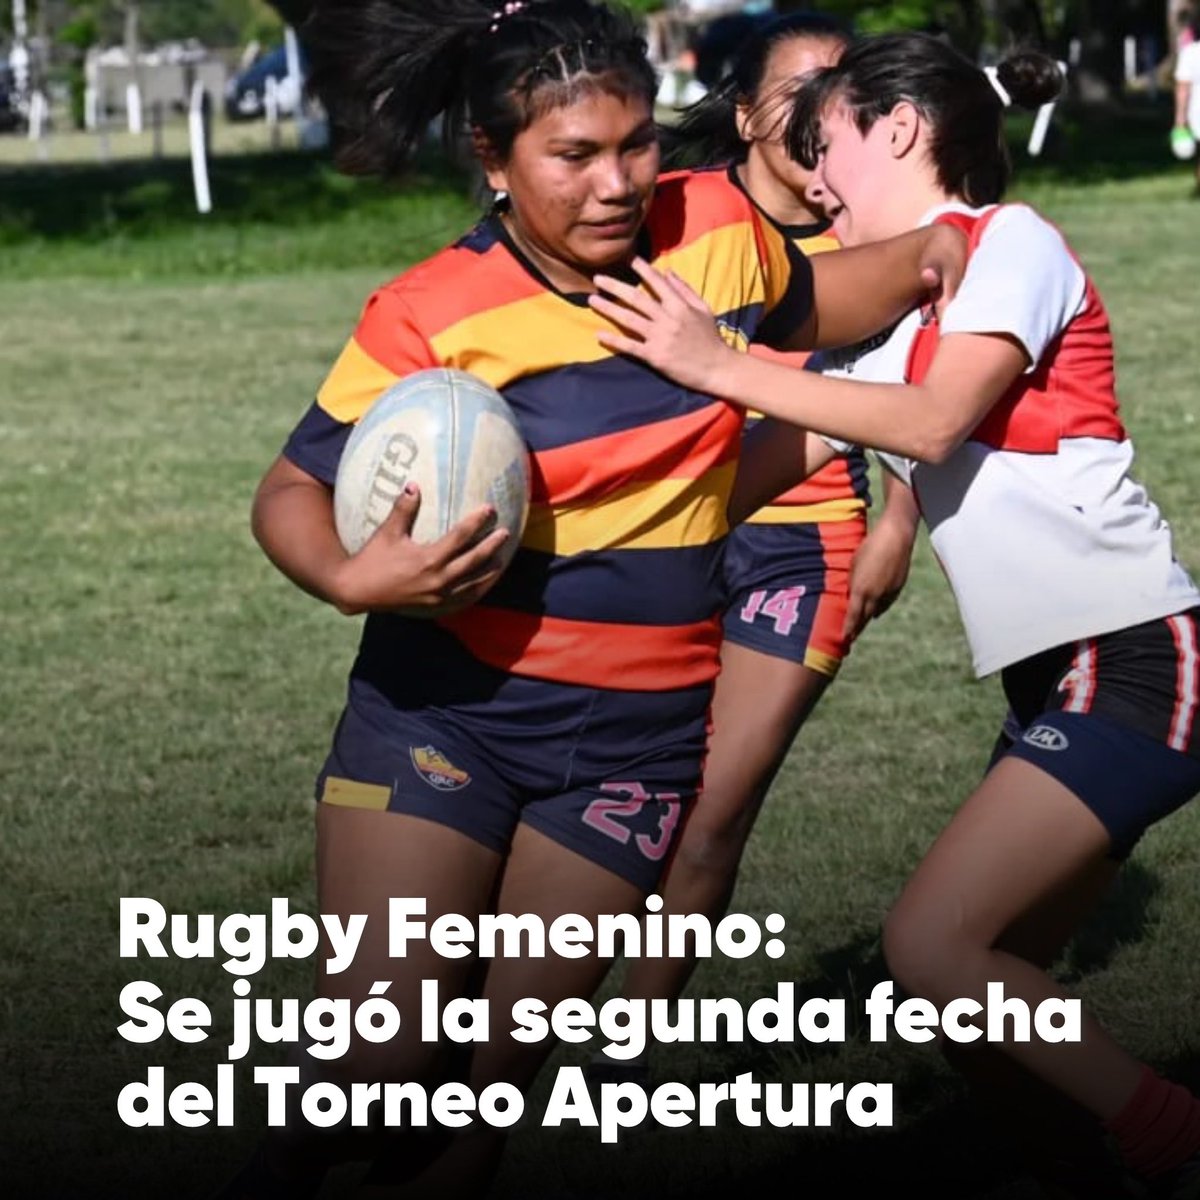 El domigo 5 de mayo se disputó en el Club Caza y Pesca la segunda fecha del Torneo Apertura de rugby femenino, organizado por la Unión de Rugby de Formosa (URF).